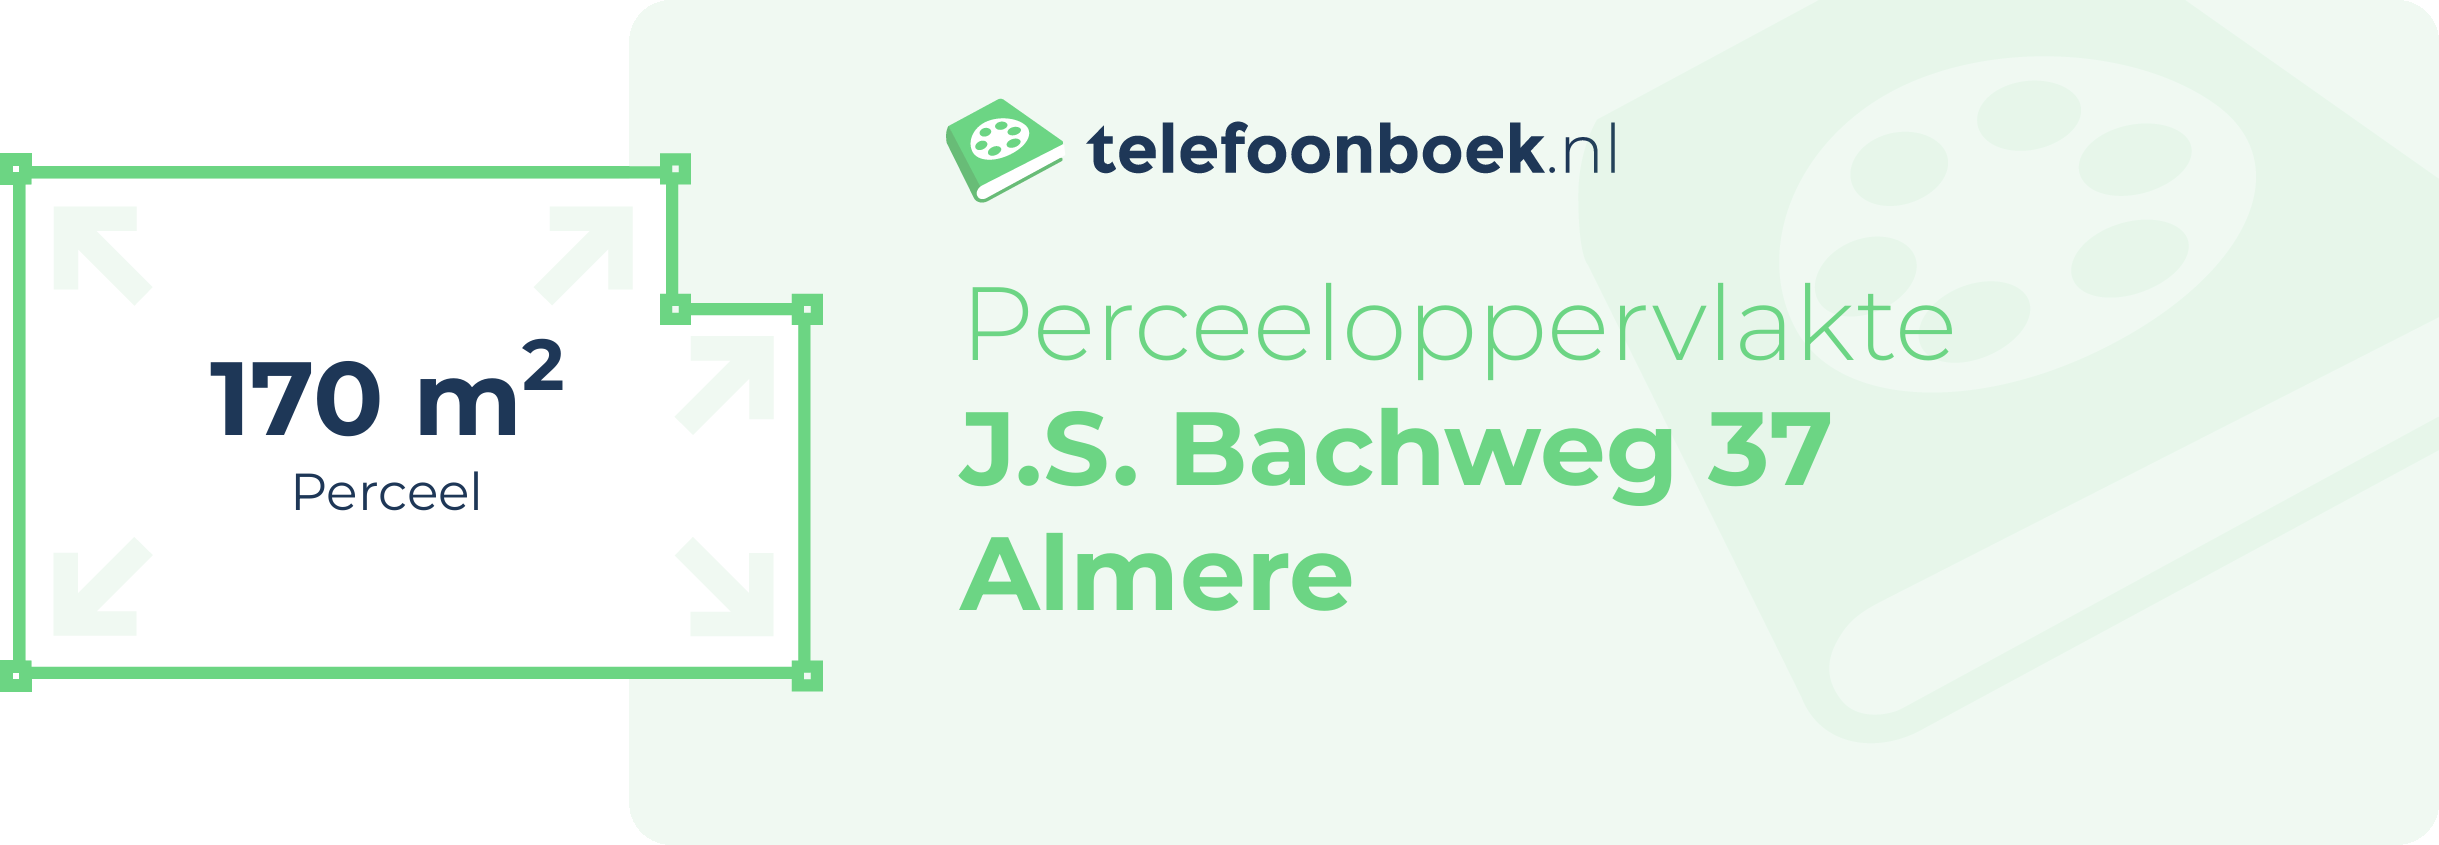 Perceeloppervlakte J.S. Bachweg 37 Almere